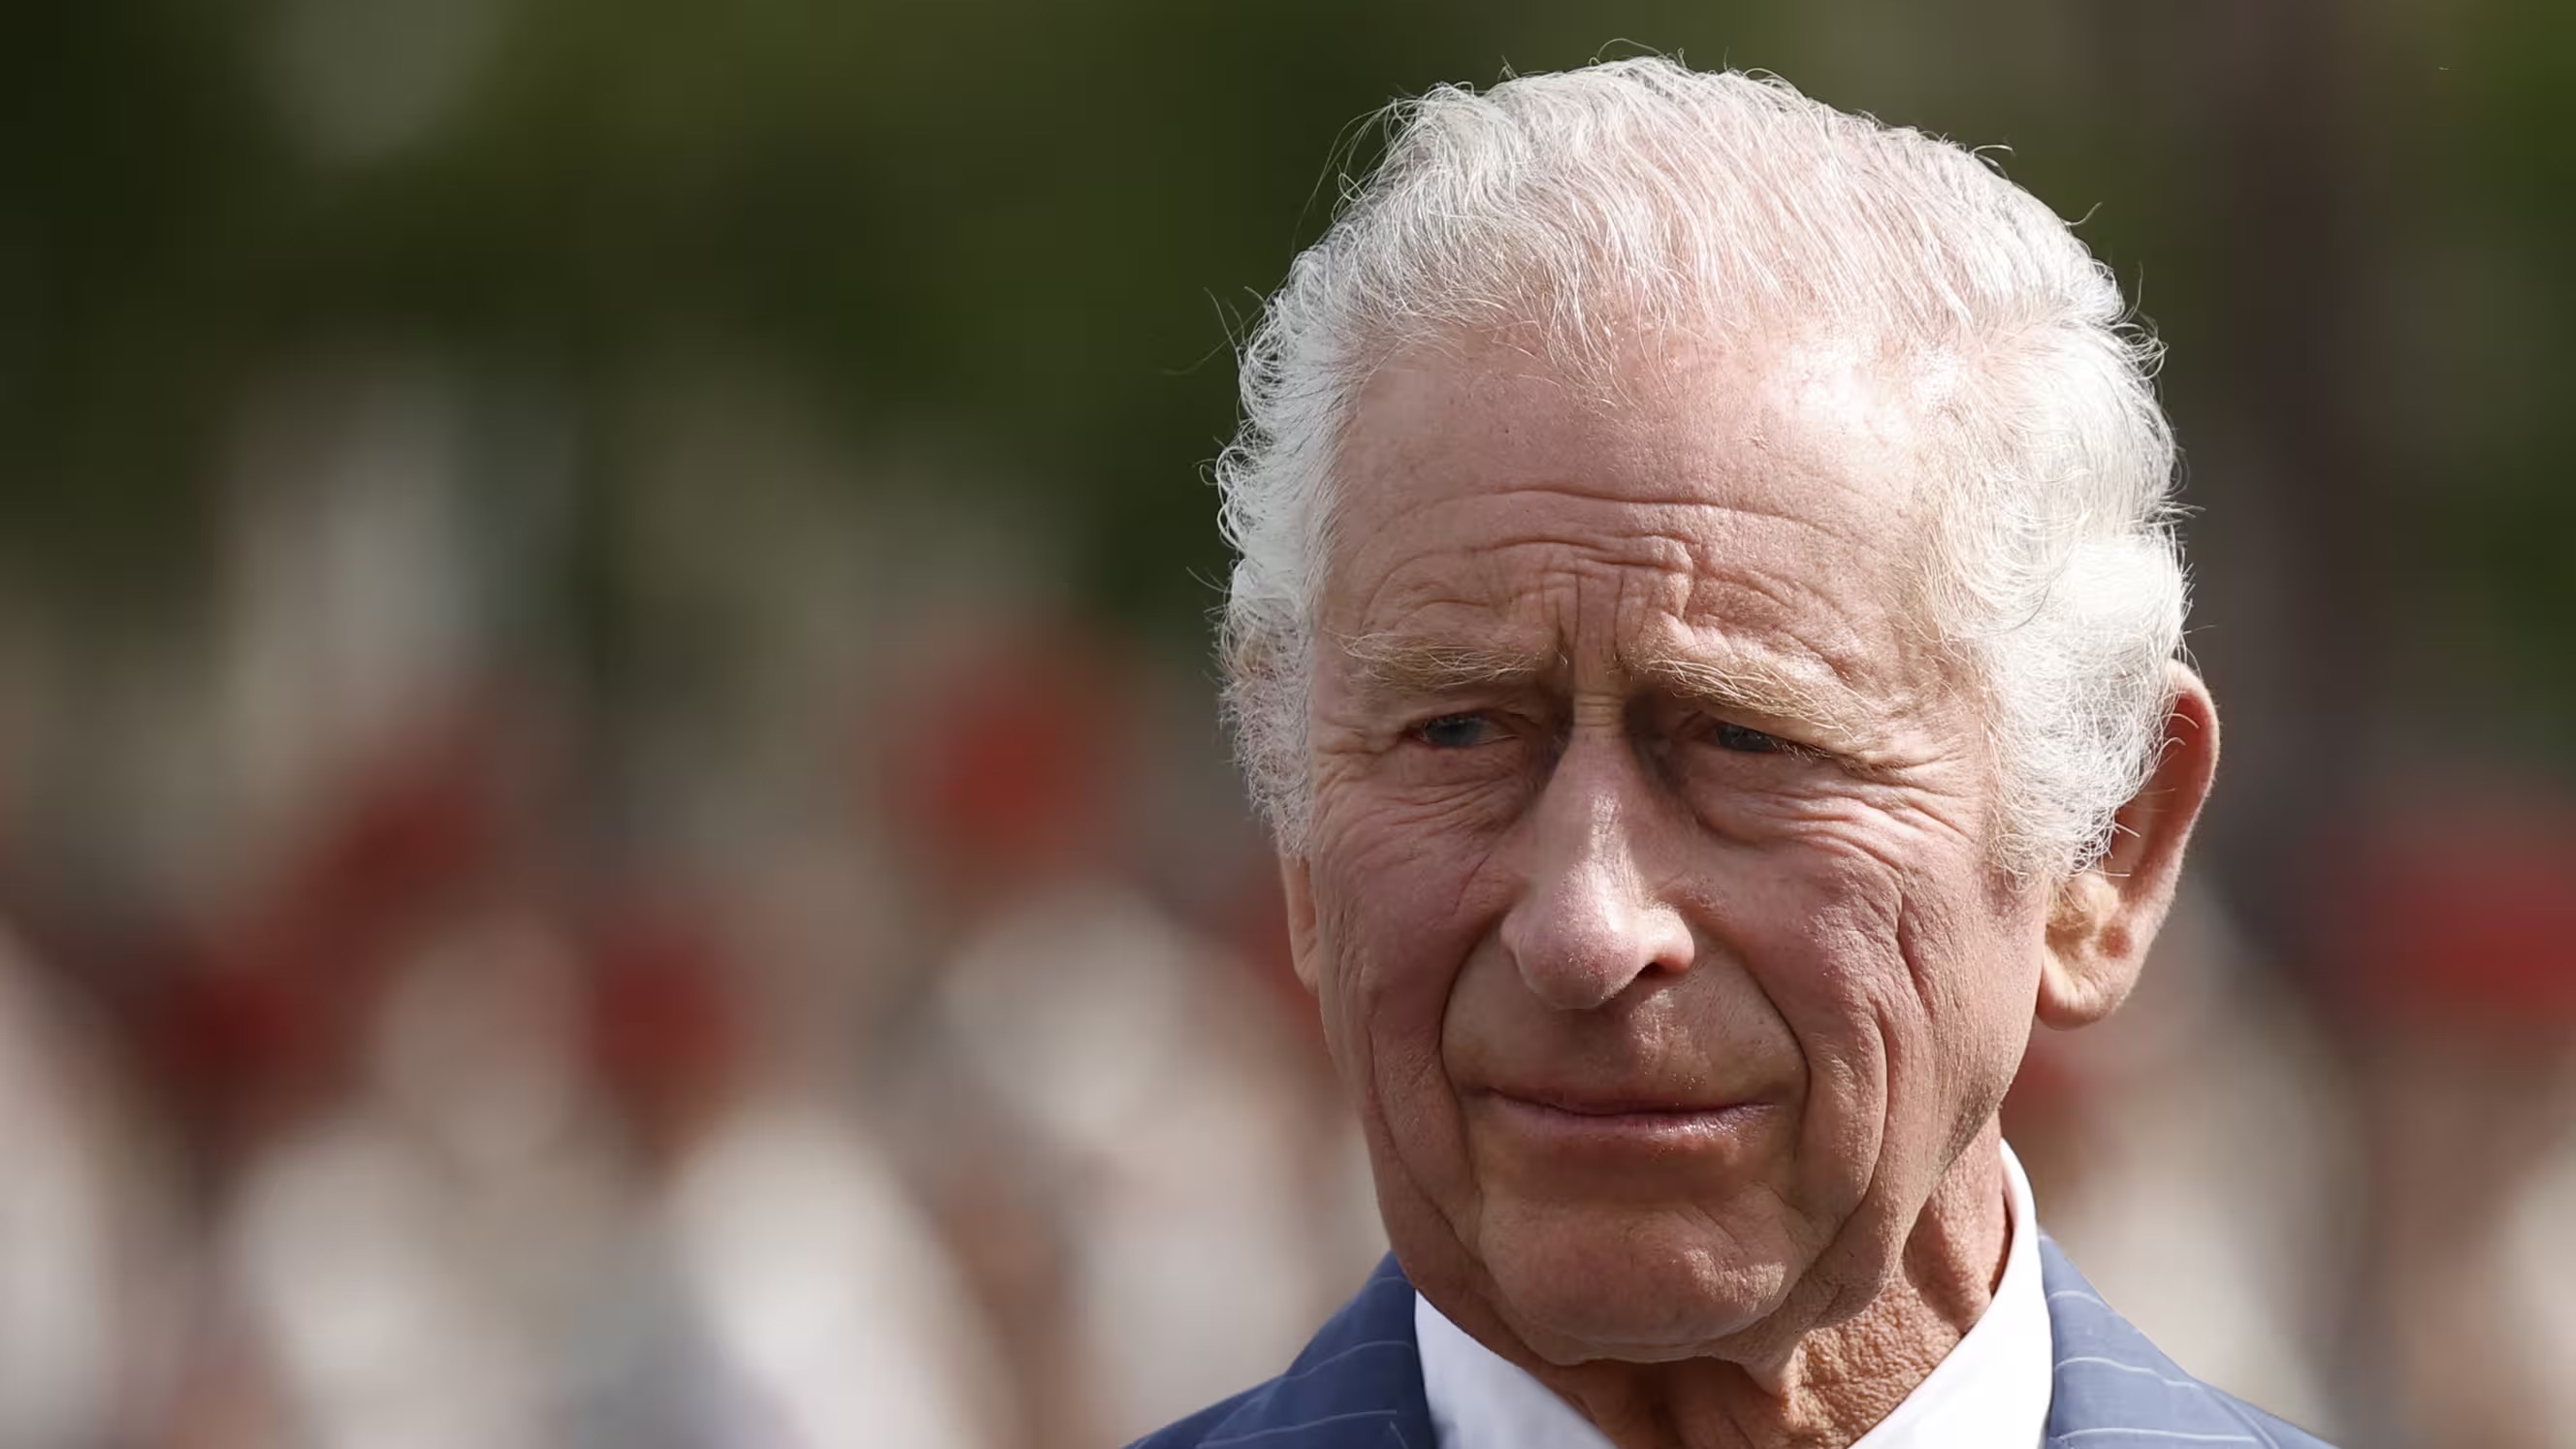 الملك تشارلز الثالث البالغ من العمر 75 عاماً سيوقف أنشطته العامة